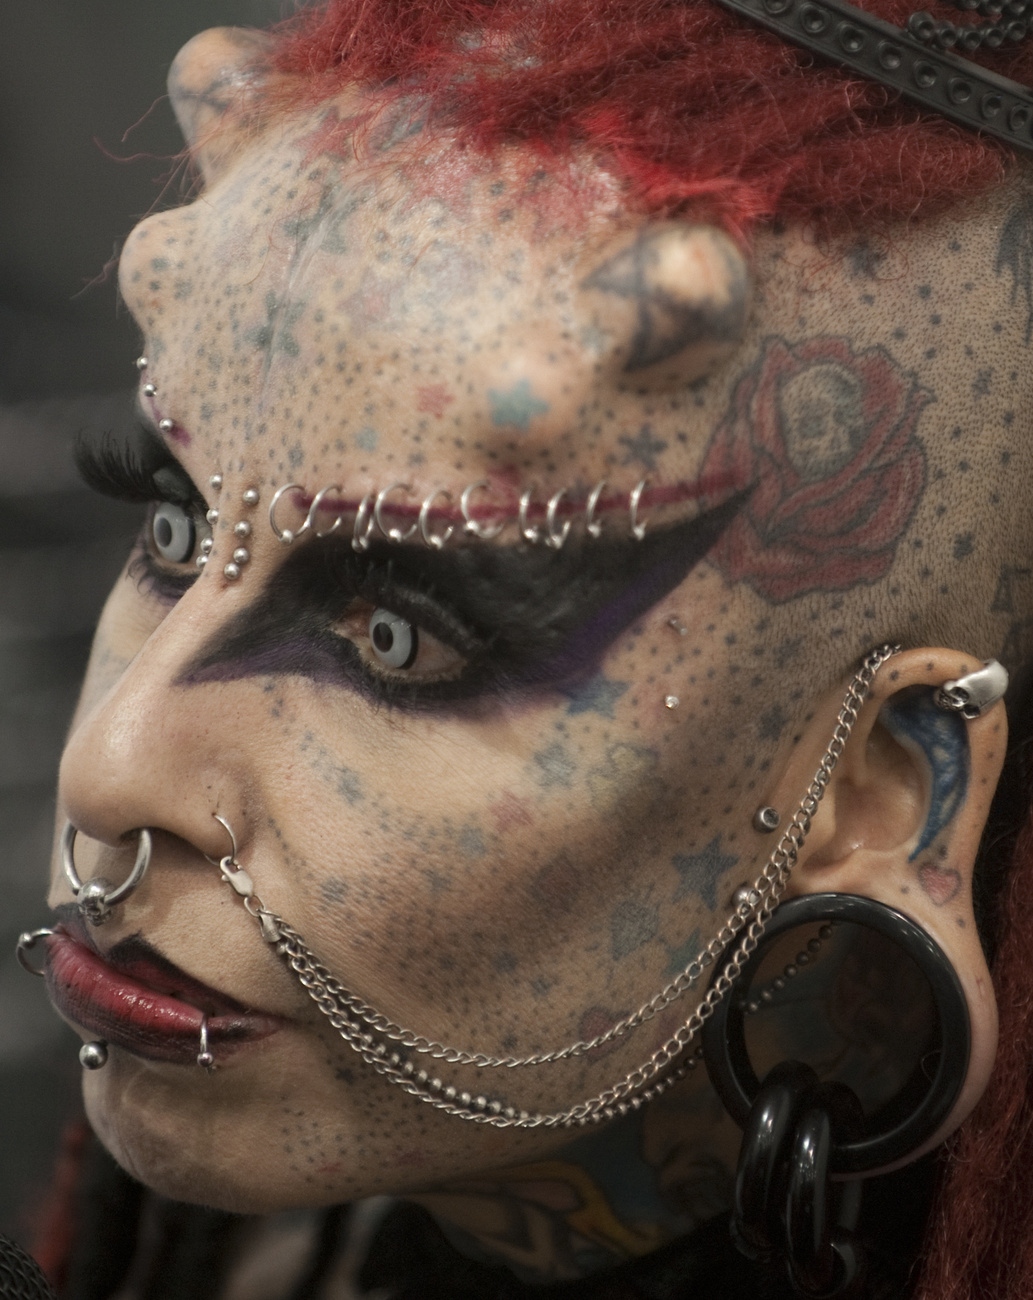 Maria Jose Cristerna, a Vampire Womanként (Vámpírnő) emlegetett tetoválóművész, mellesleg ügyvéd